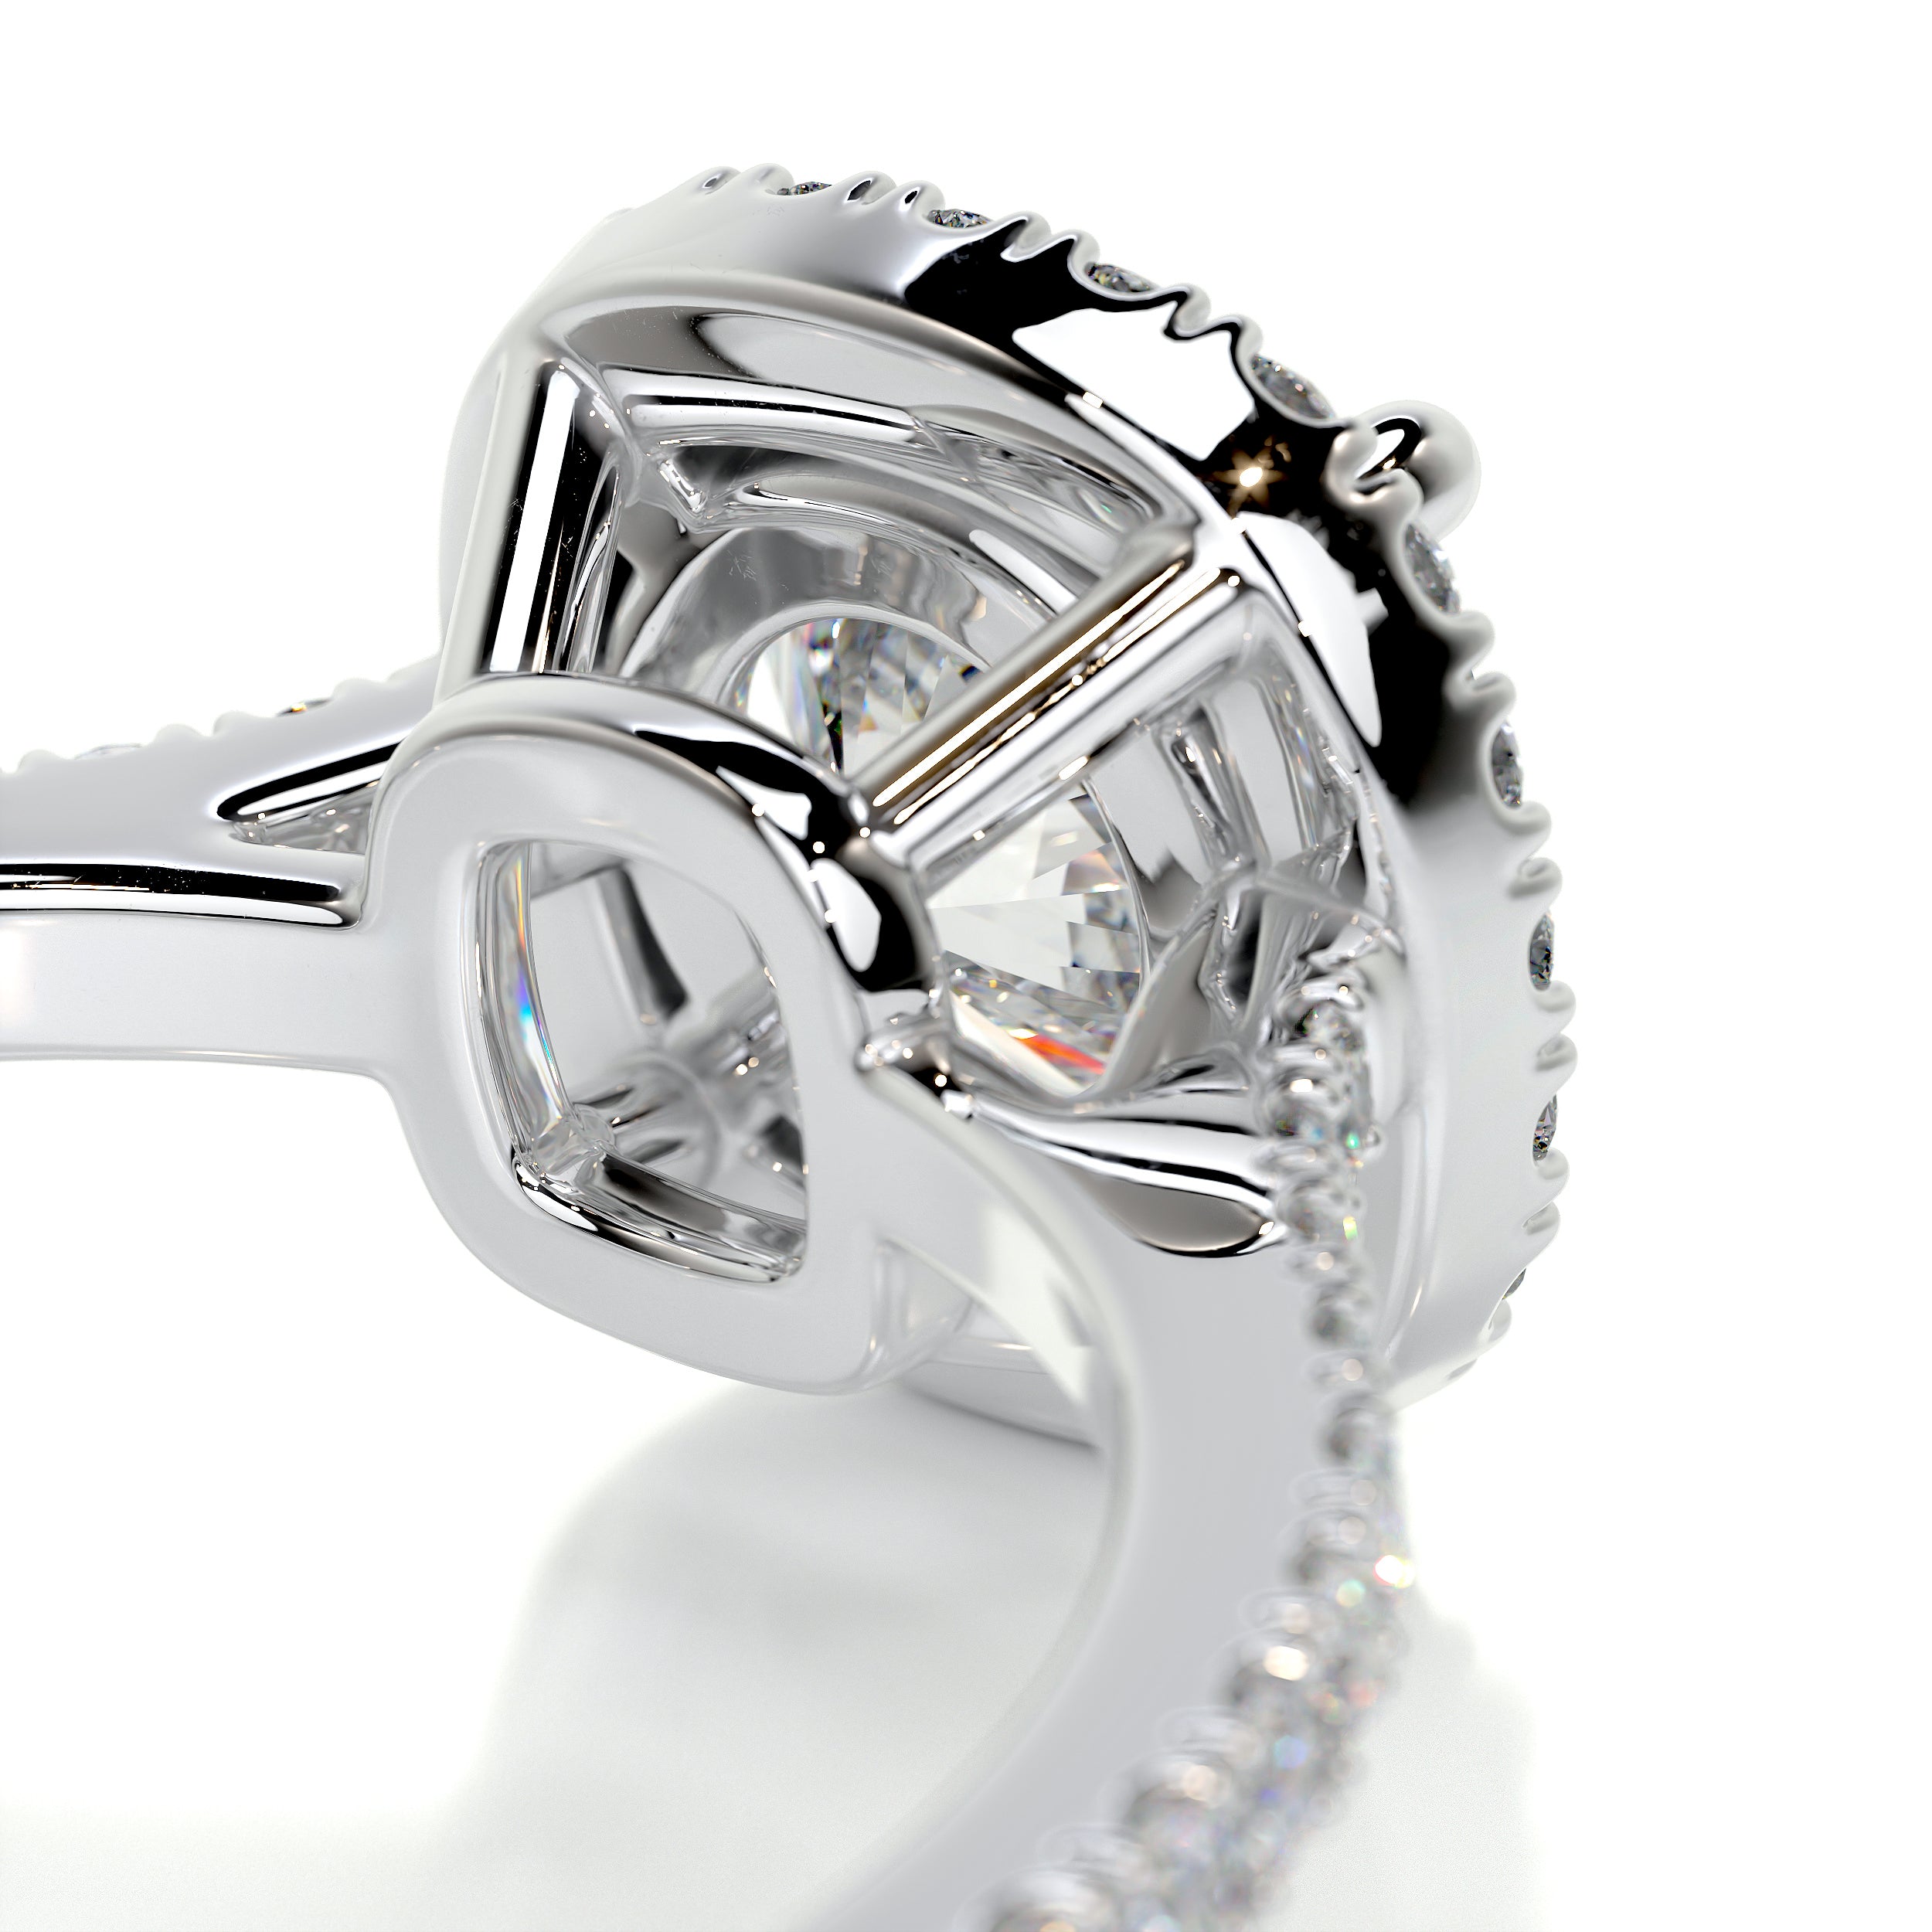 Claudia Diamond Engagement Ring   (1.35 Carat) -Platinum